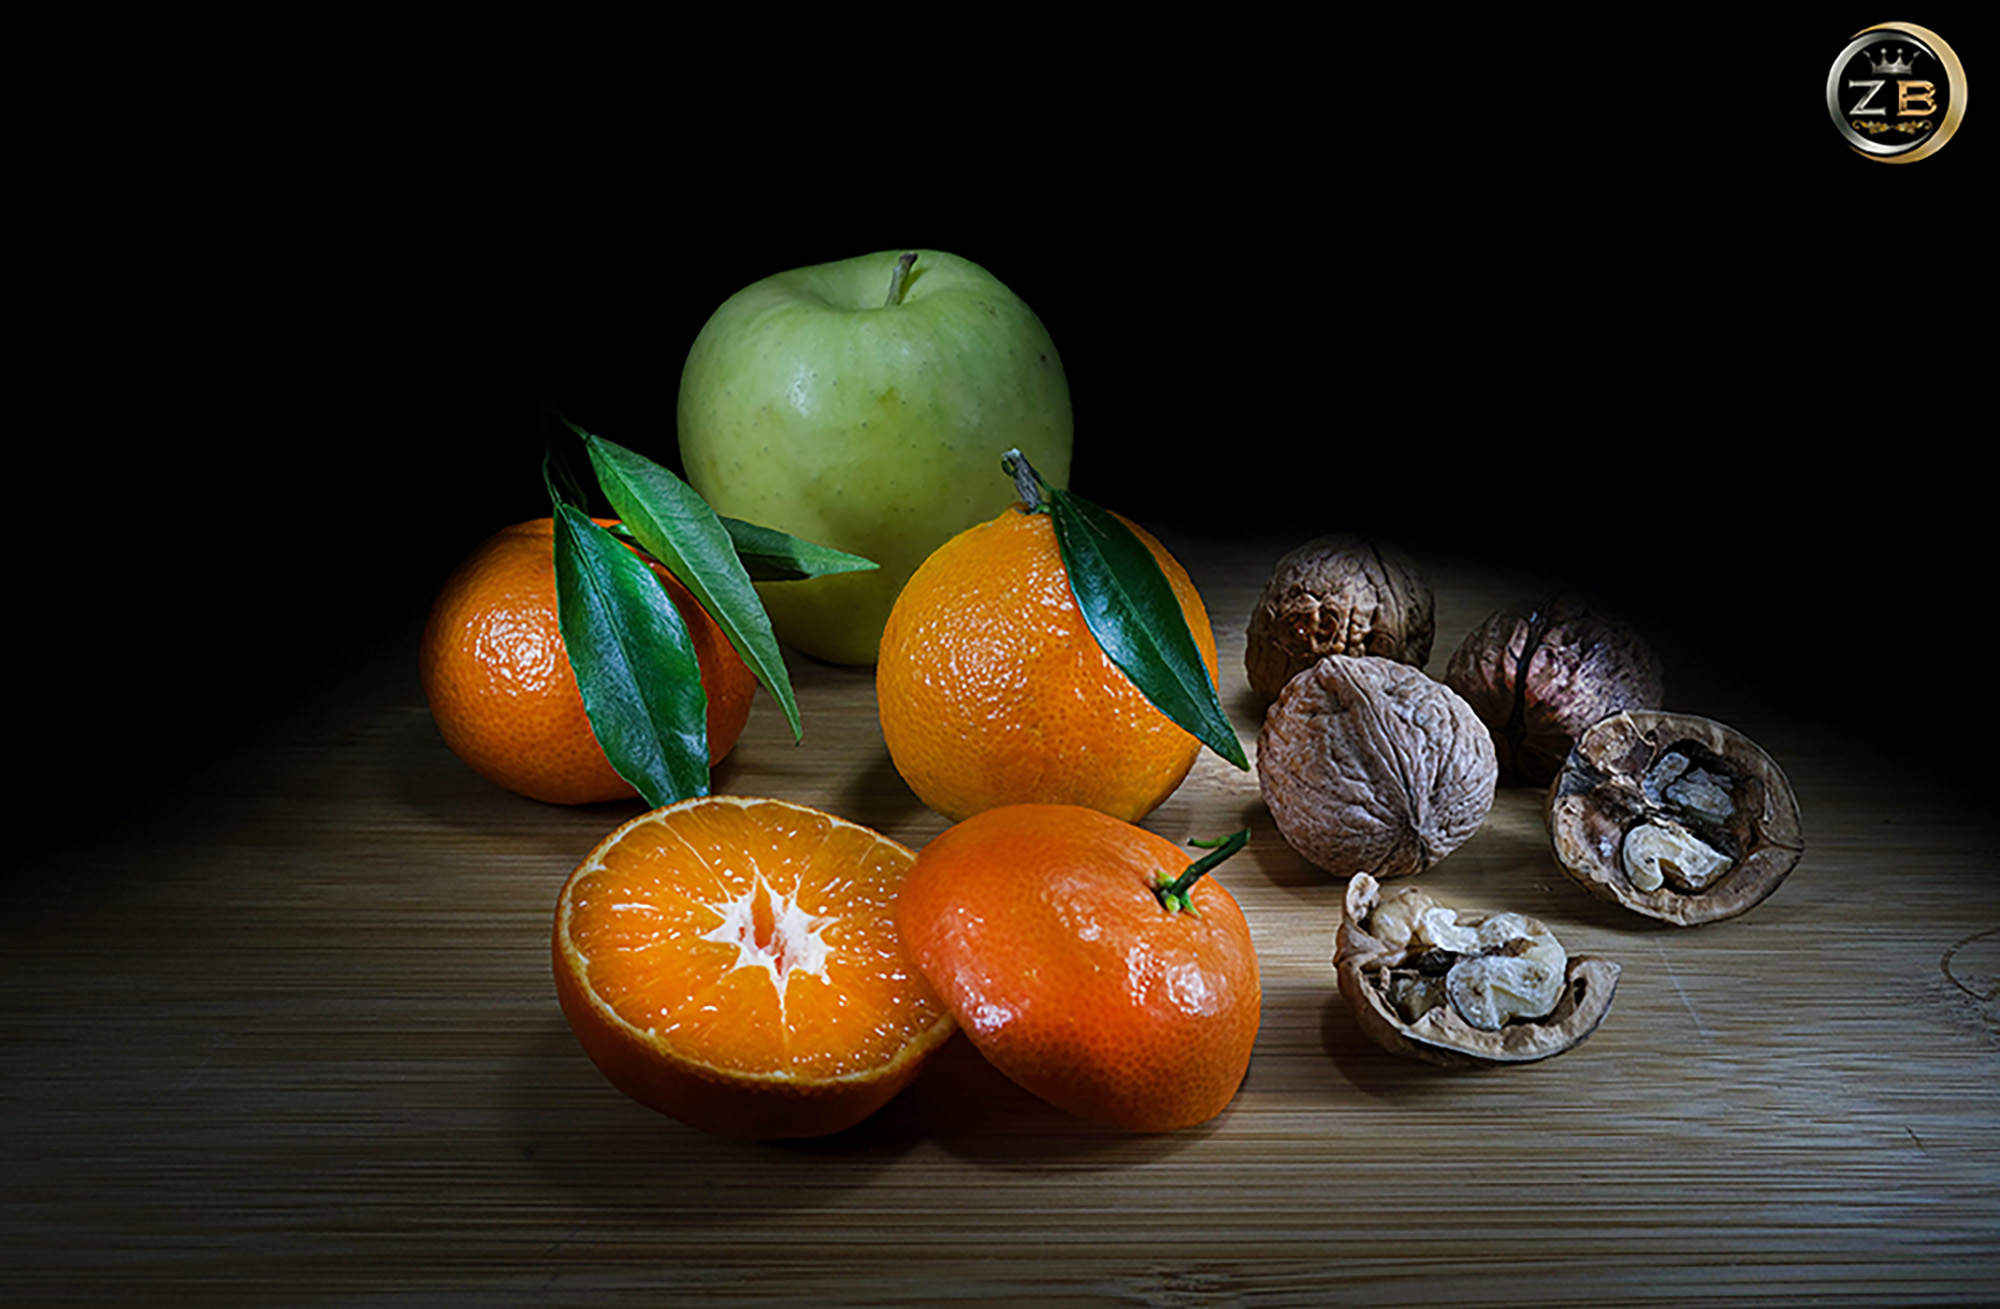 Fruits in Still Life...